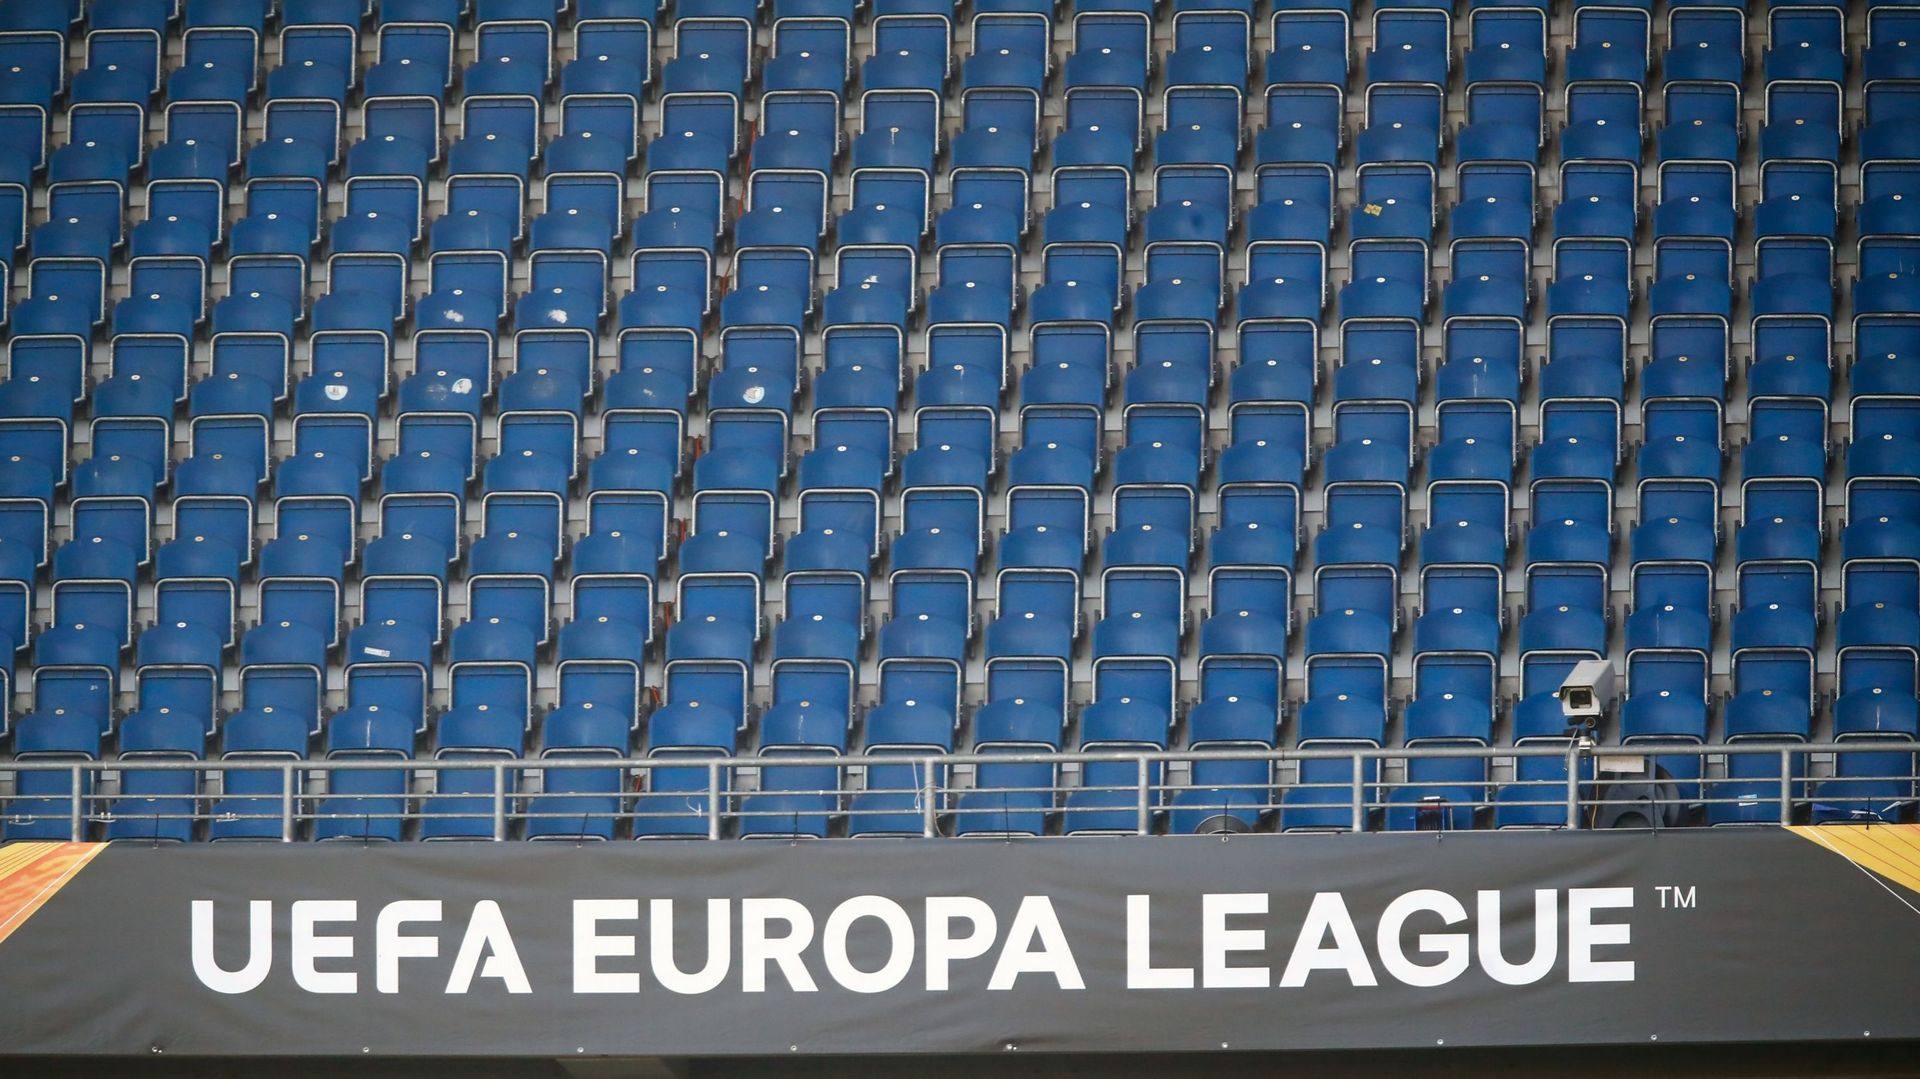 Europa League, demandez le programme ! 